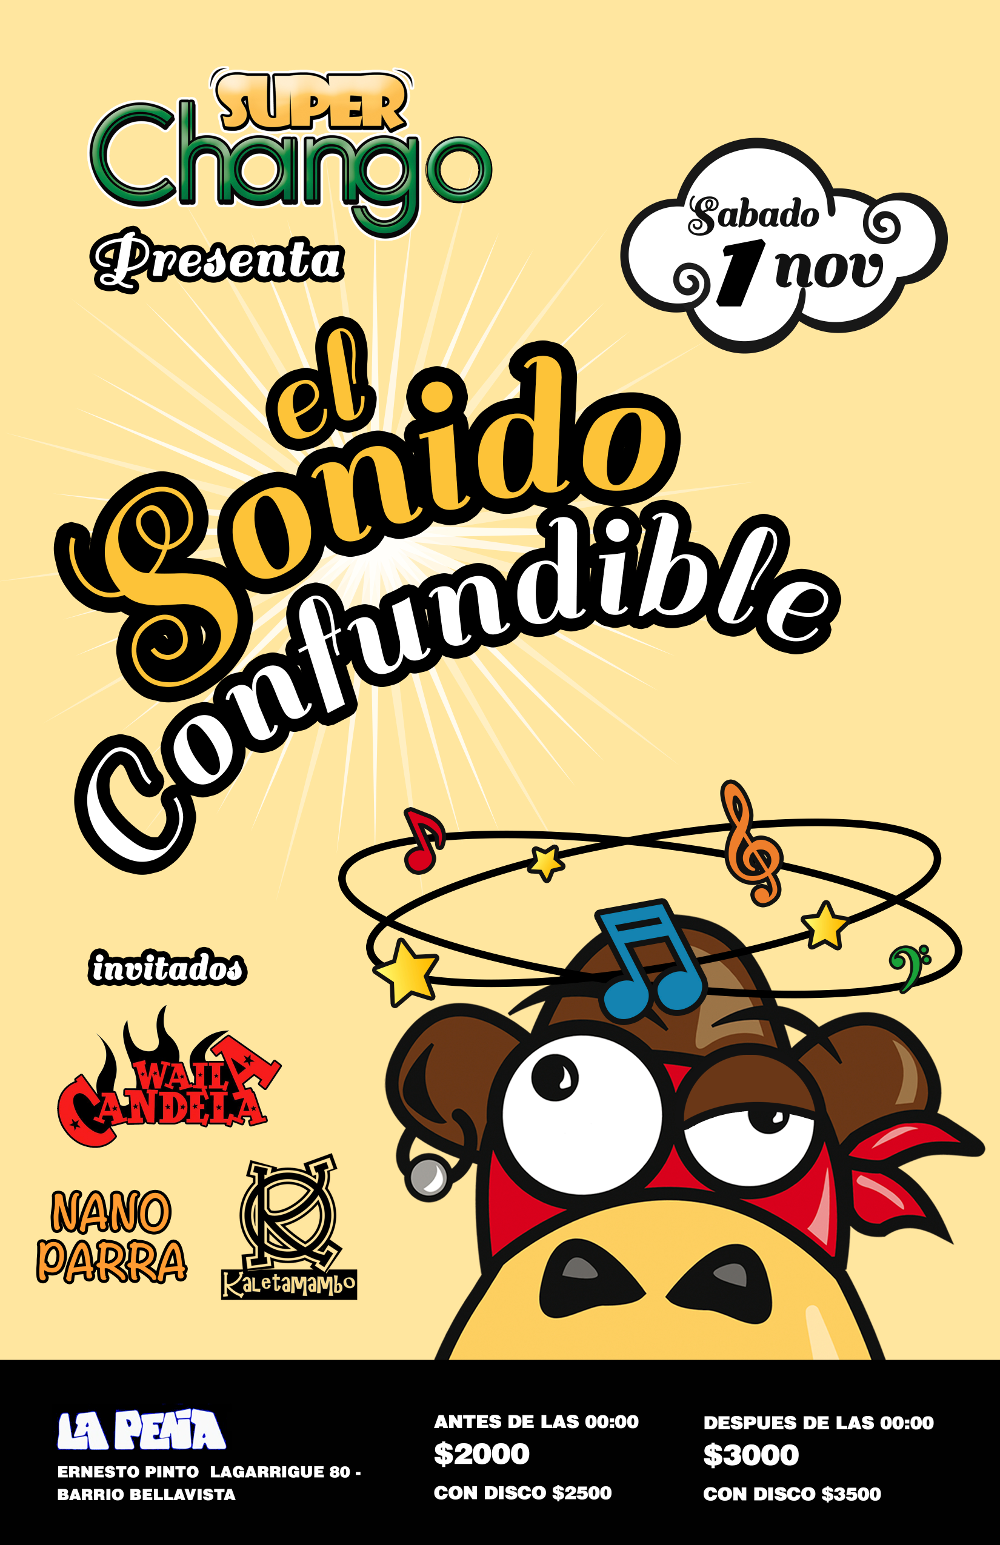 Lanzamiento de El Sonido Confundible de la SuperChango Band, 1 de Noviembre, Peña de Nano Parra, Ernesto Pinto Lagarrigue 80, Barrio Bellavista